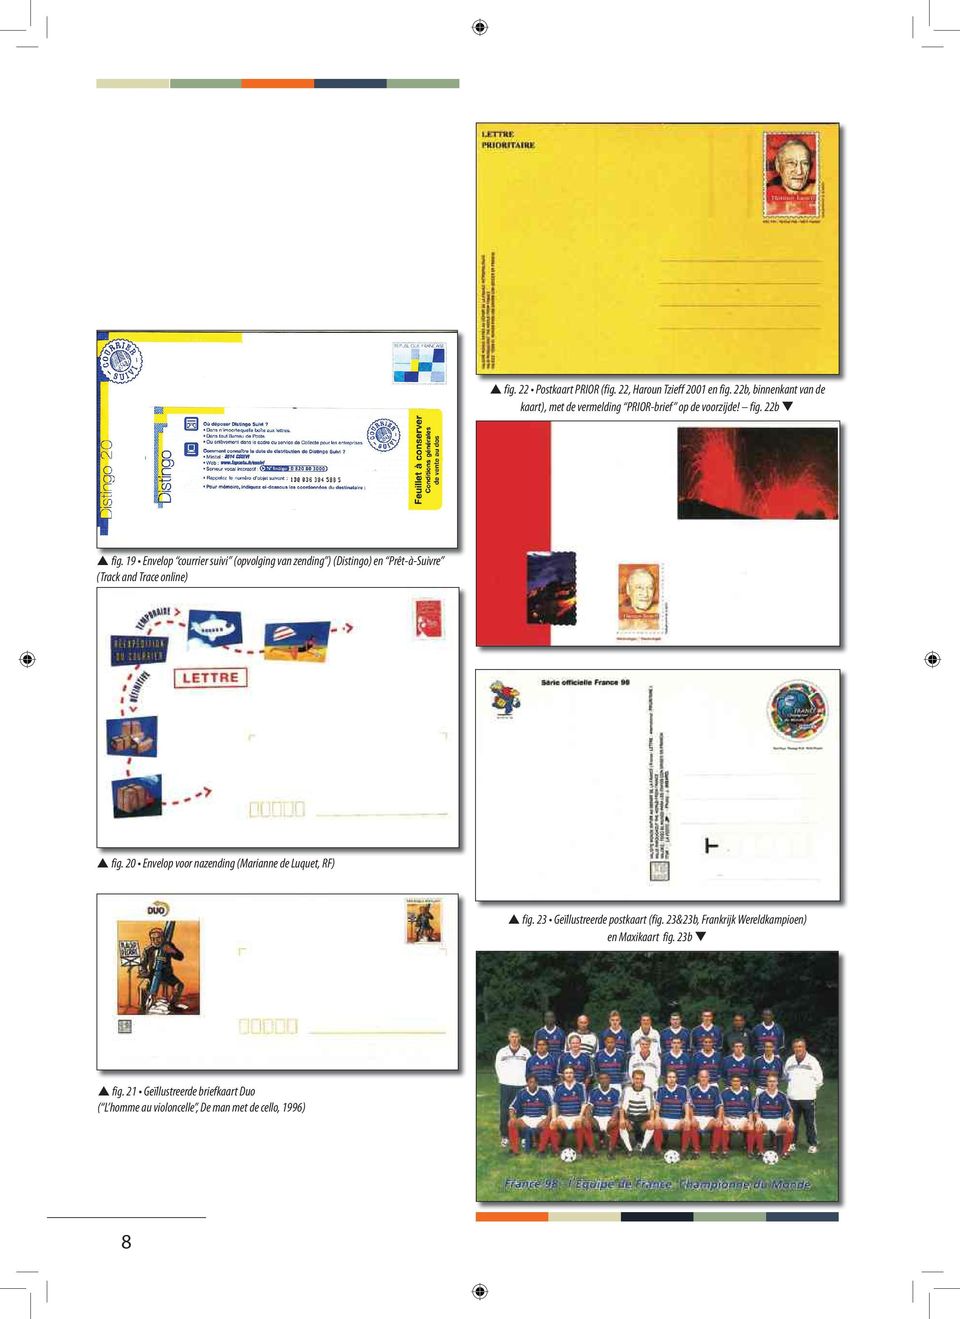 19 Envelop courrier suivi (opvolging van zending ) (Distingo) en Prêt-à-Suivre (Track and Trace online) fig.